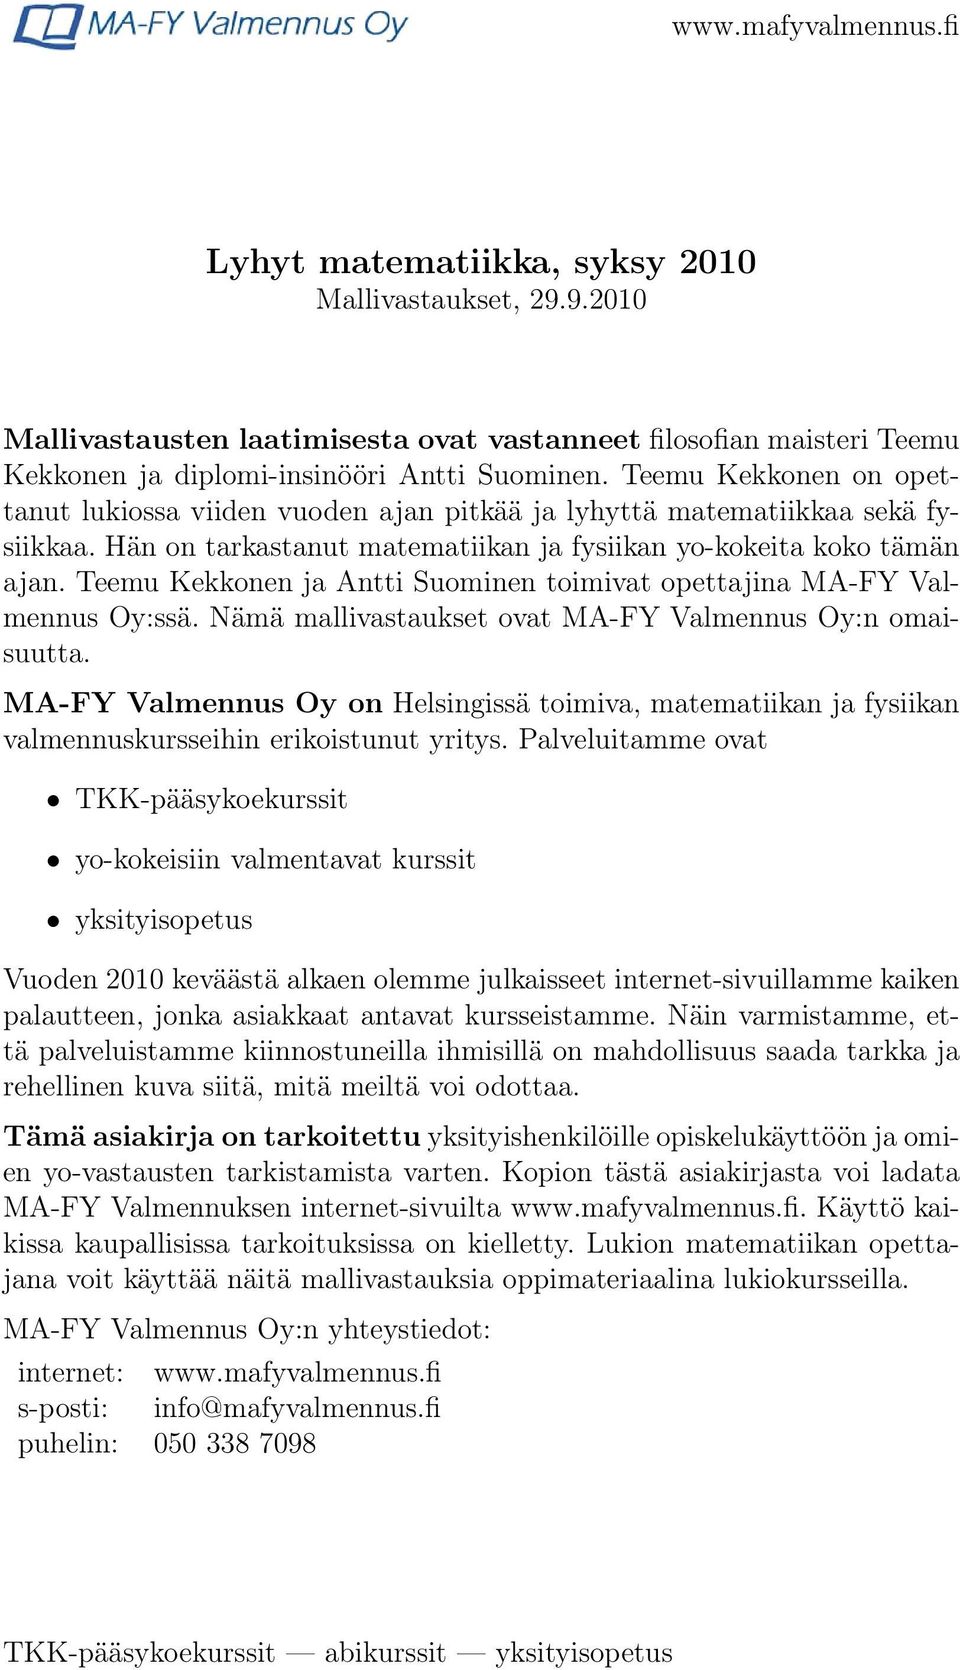 Teemu Kekkonen ja Antti Suominen toimivat opettajina MA-FY Valmennus Oy:ssä. Nämä mallivastaukset ovat MA-FY Valmennus Oy:n omaisuutta.